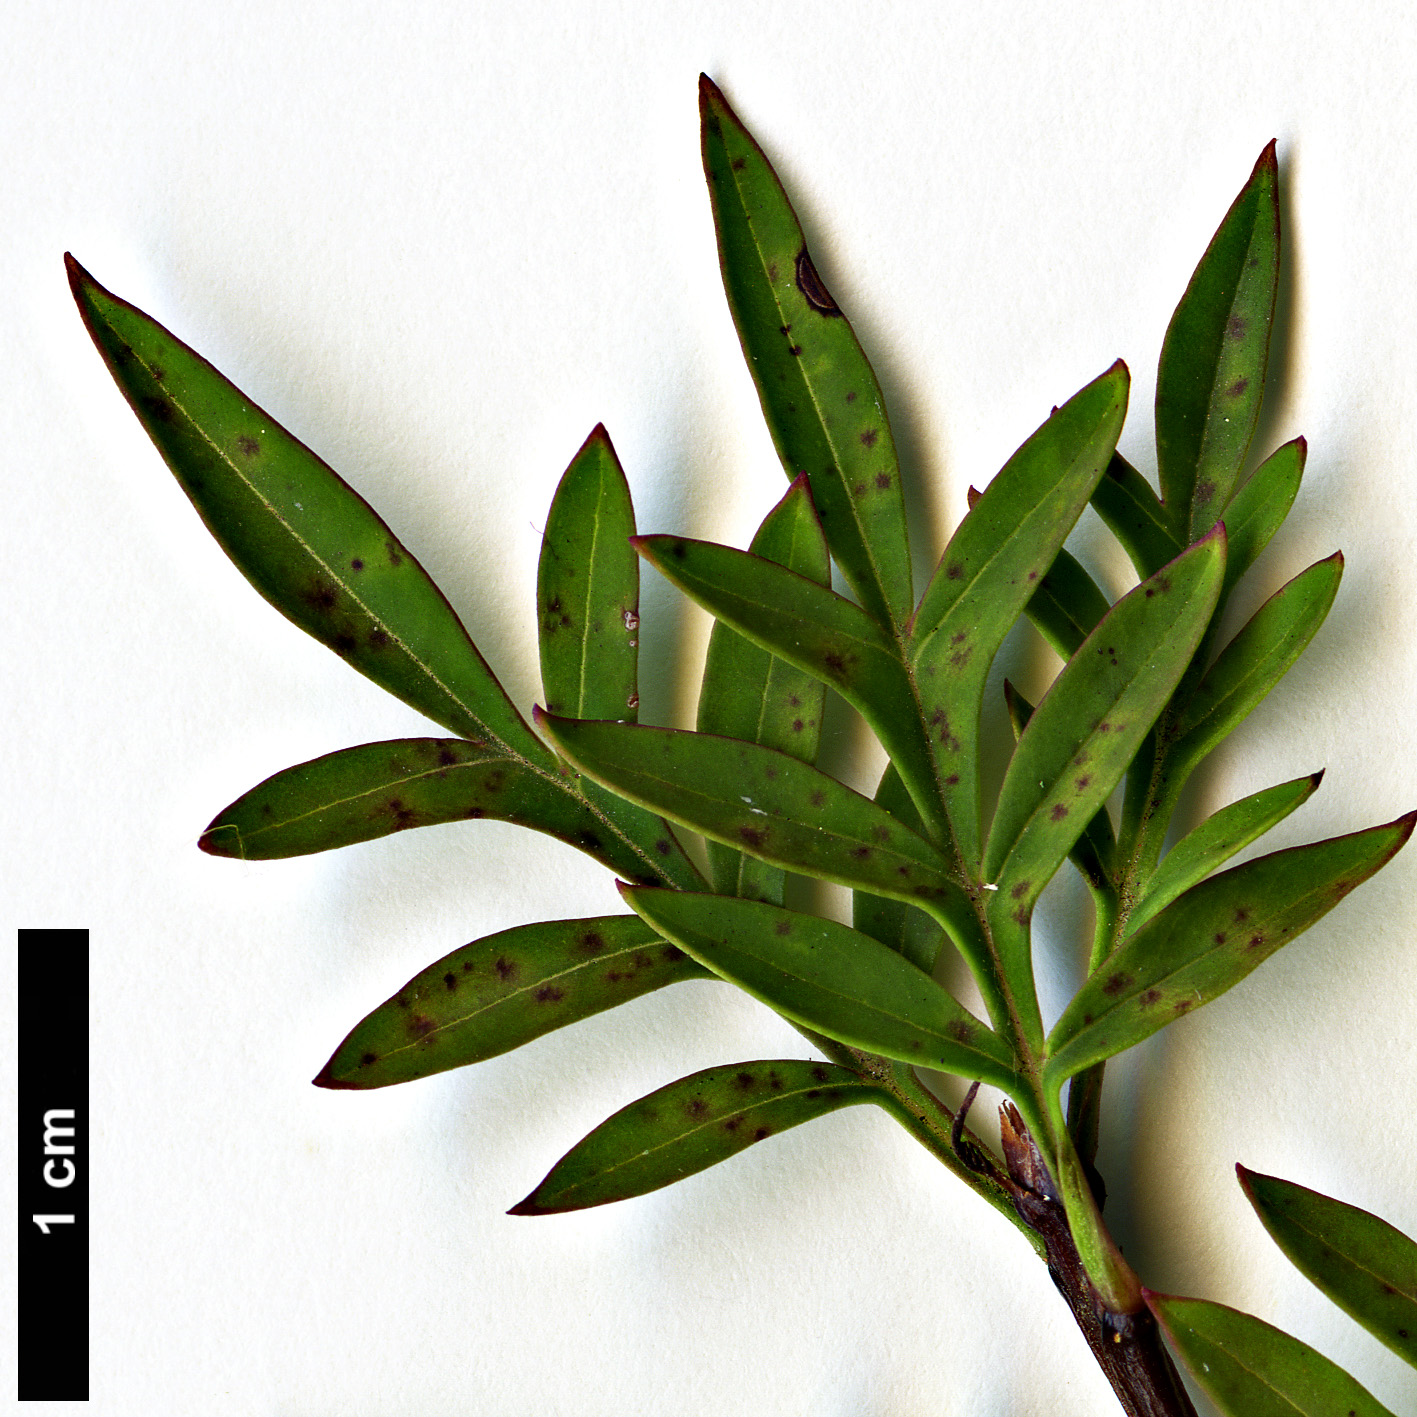 High resolution image: Family: Oleaceae - Genus: Syringa - Taxon: protolaciniata - SpeciesSub: 'Kabul'